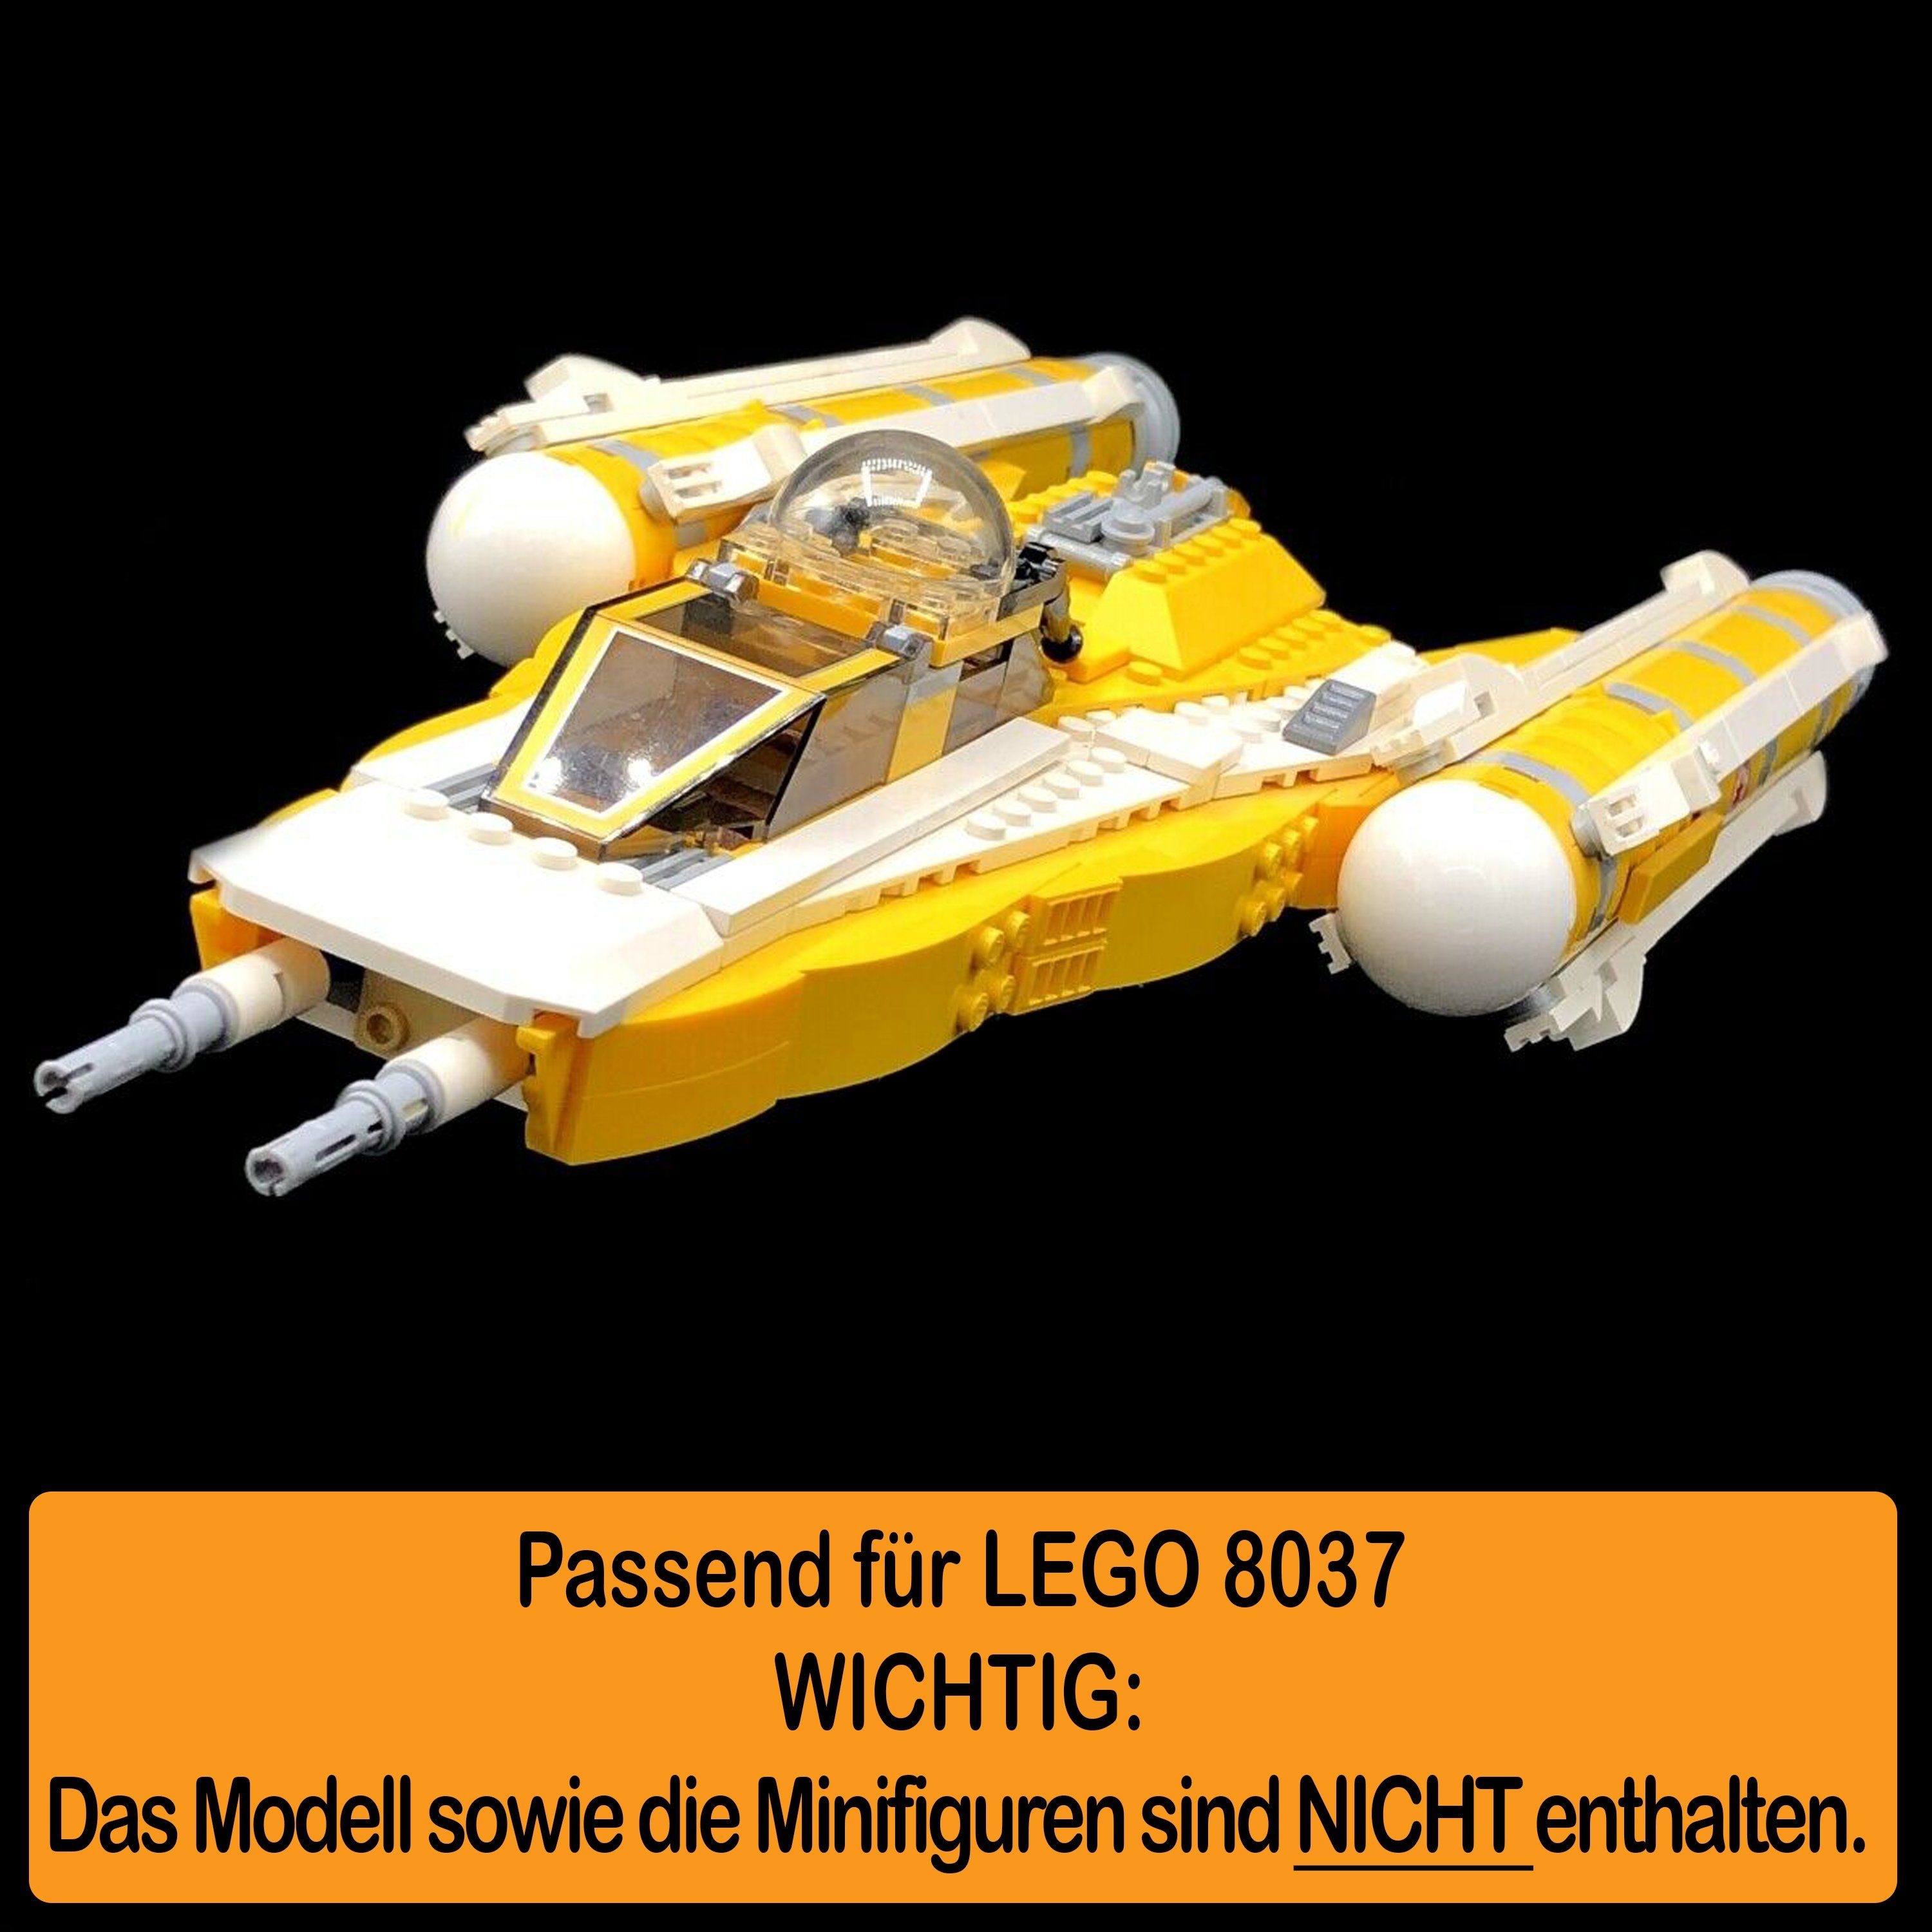 AREA17 Standfuß Acryl Display Made Starfighter (verschiedene in 100% einstellbar, Positionen Anakin's und zusammenbauen), Winkel LEGO 8037 selbst Stand zum für Y-Wing Germany